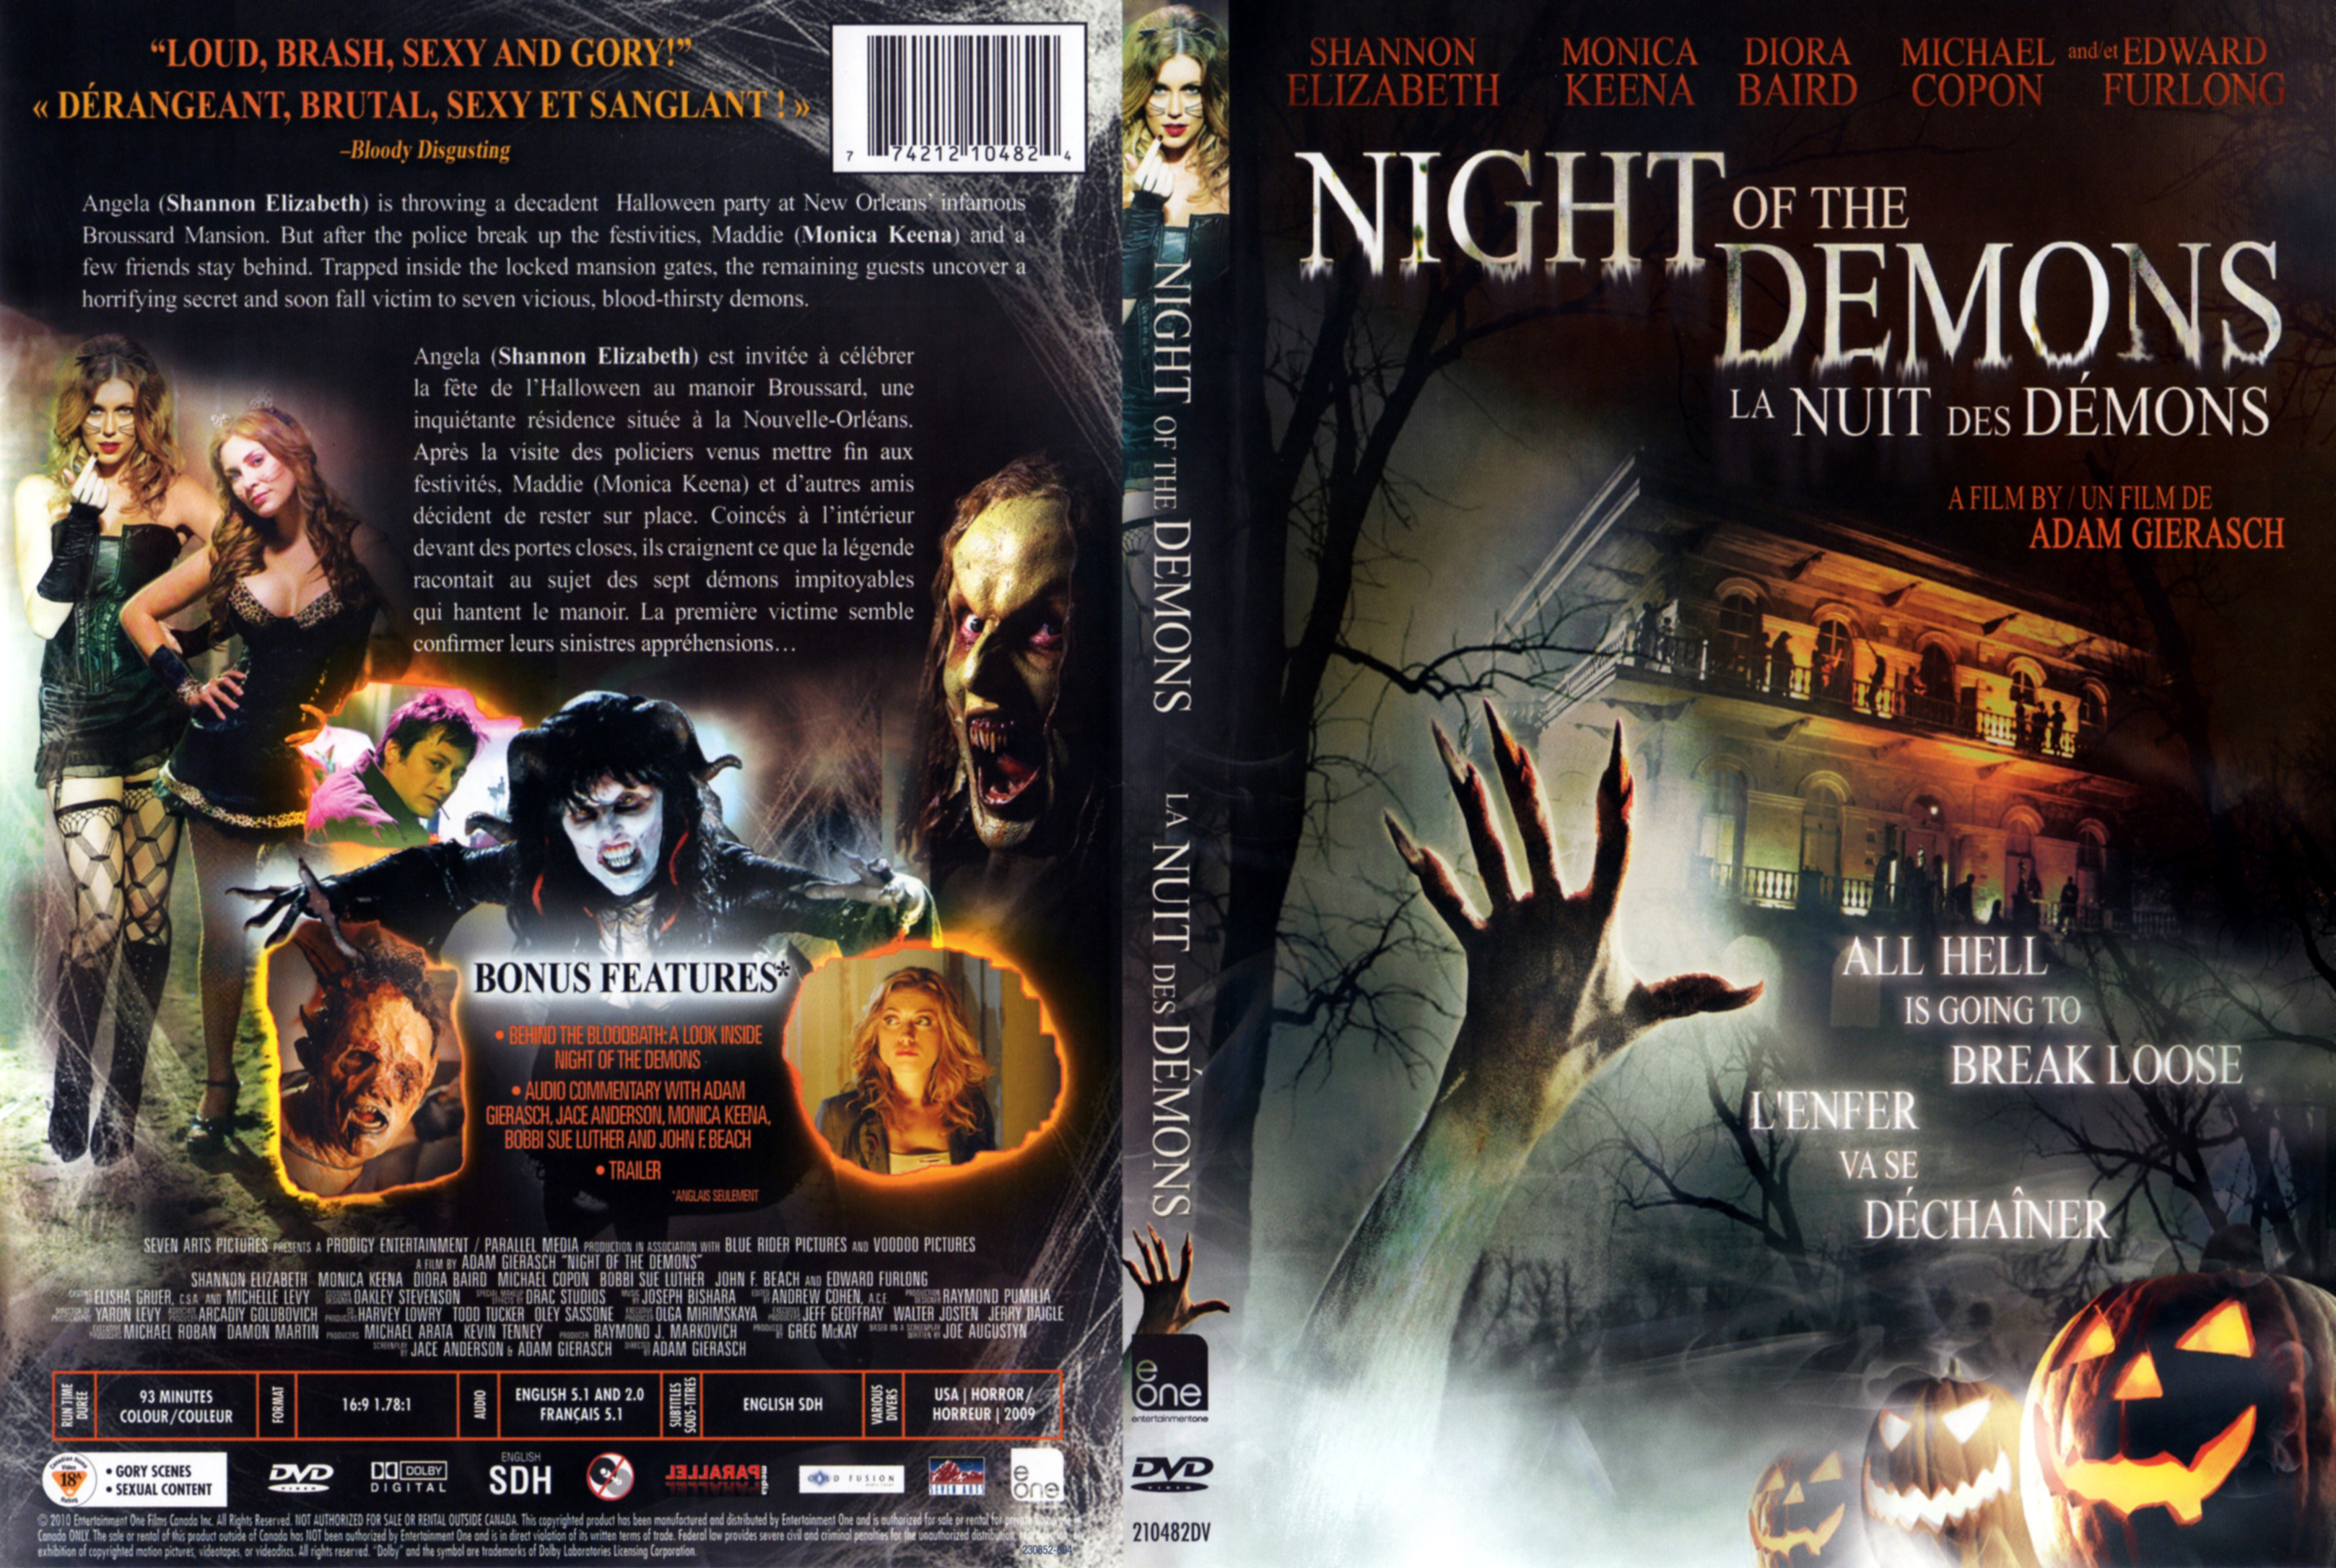 Jaquette DVD Night of the demons - La nuit des demons (Canadienne)